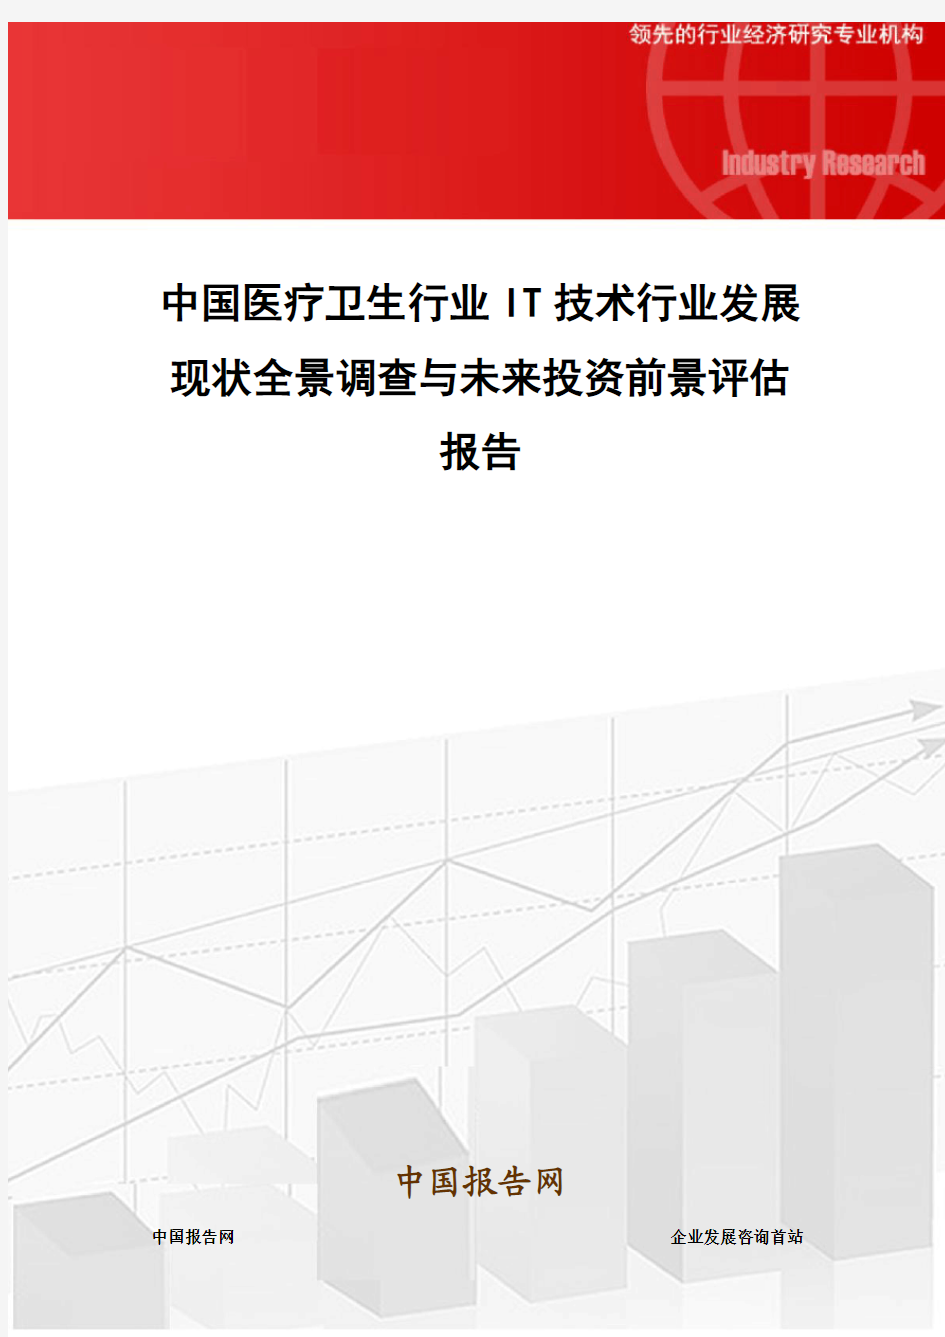 中国医疗卫生行业IT技术行业发展现状全景调查与未来投资前景评估报告